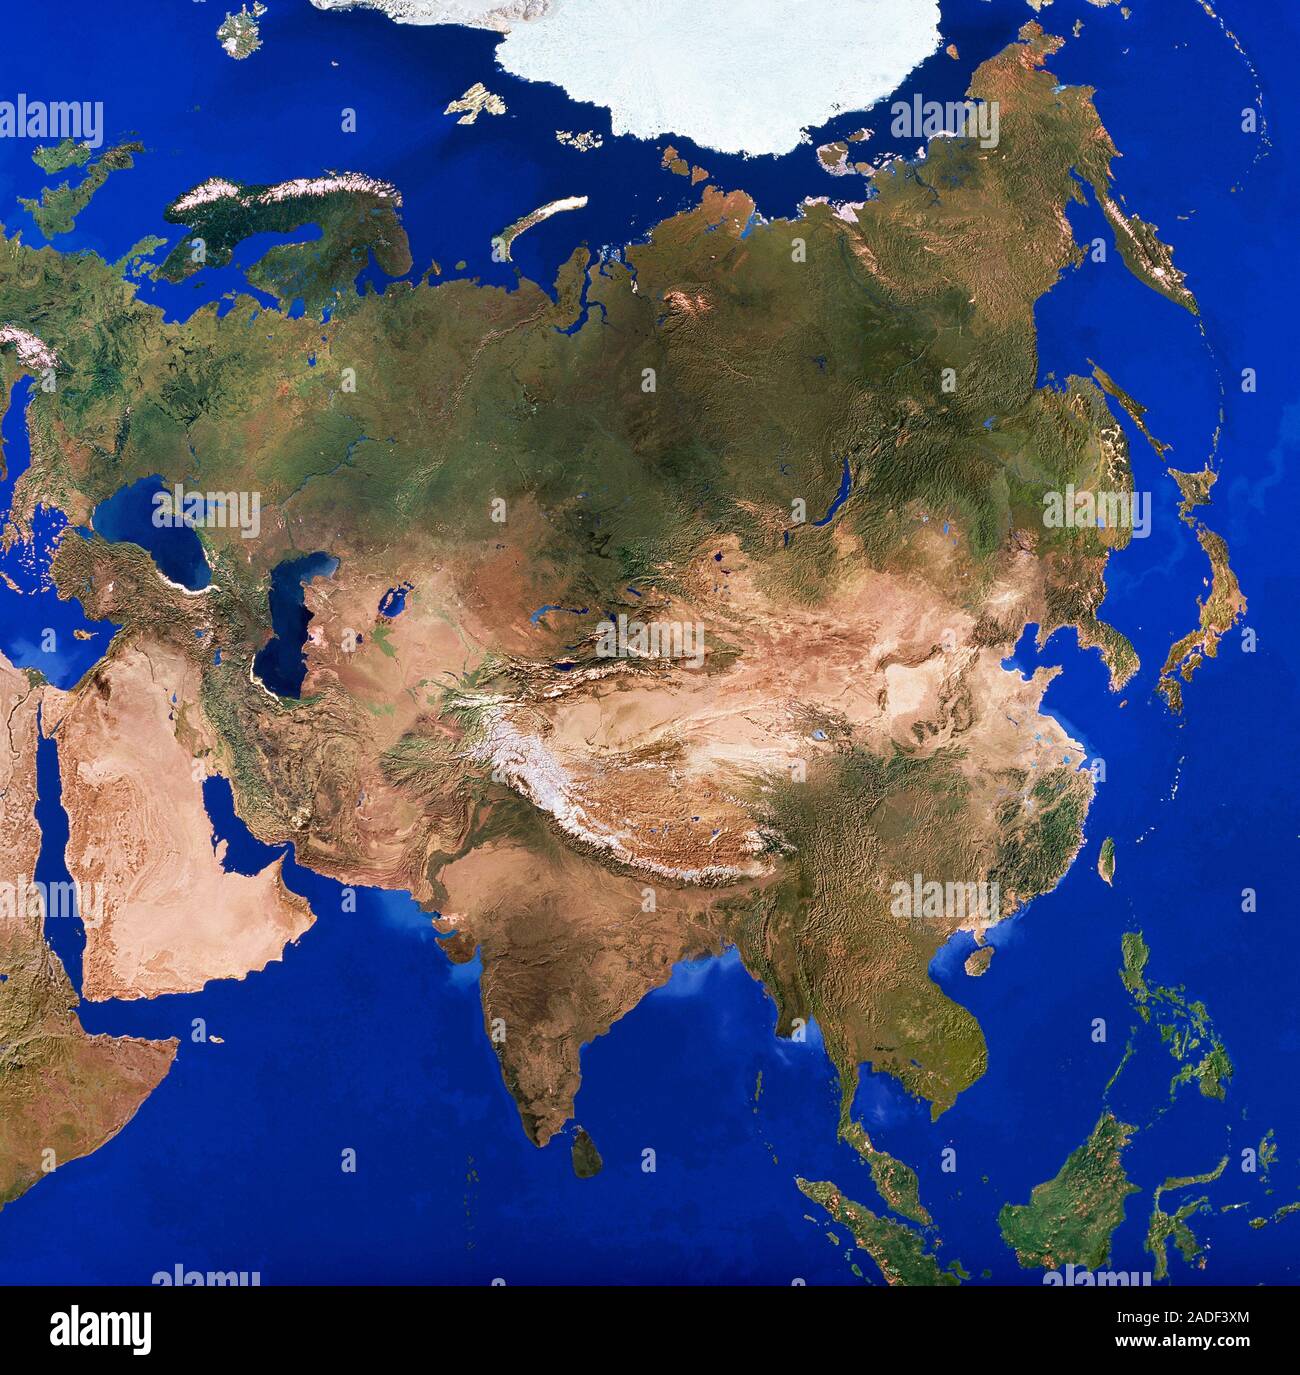 Евразия трансляция. Евразия со спутника. Евразия из космоса. Евразия снимок из космоса. Материк Евразия с космоса.